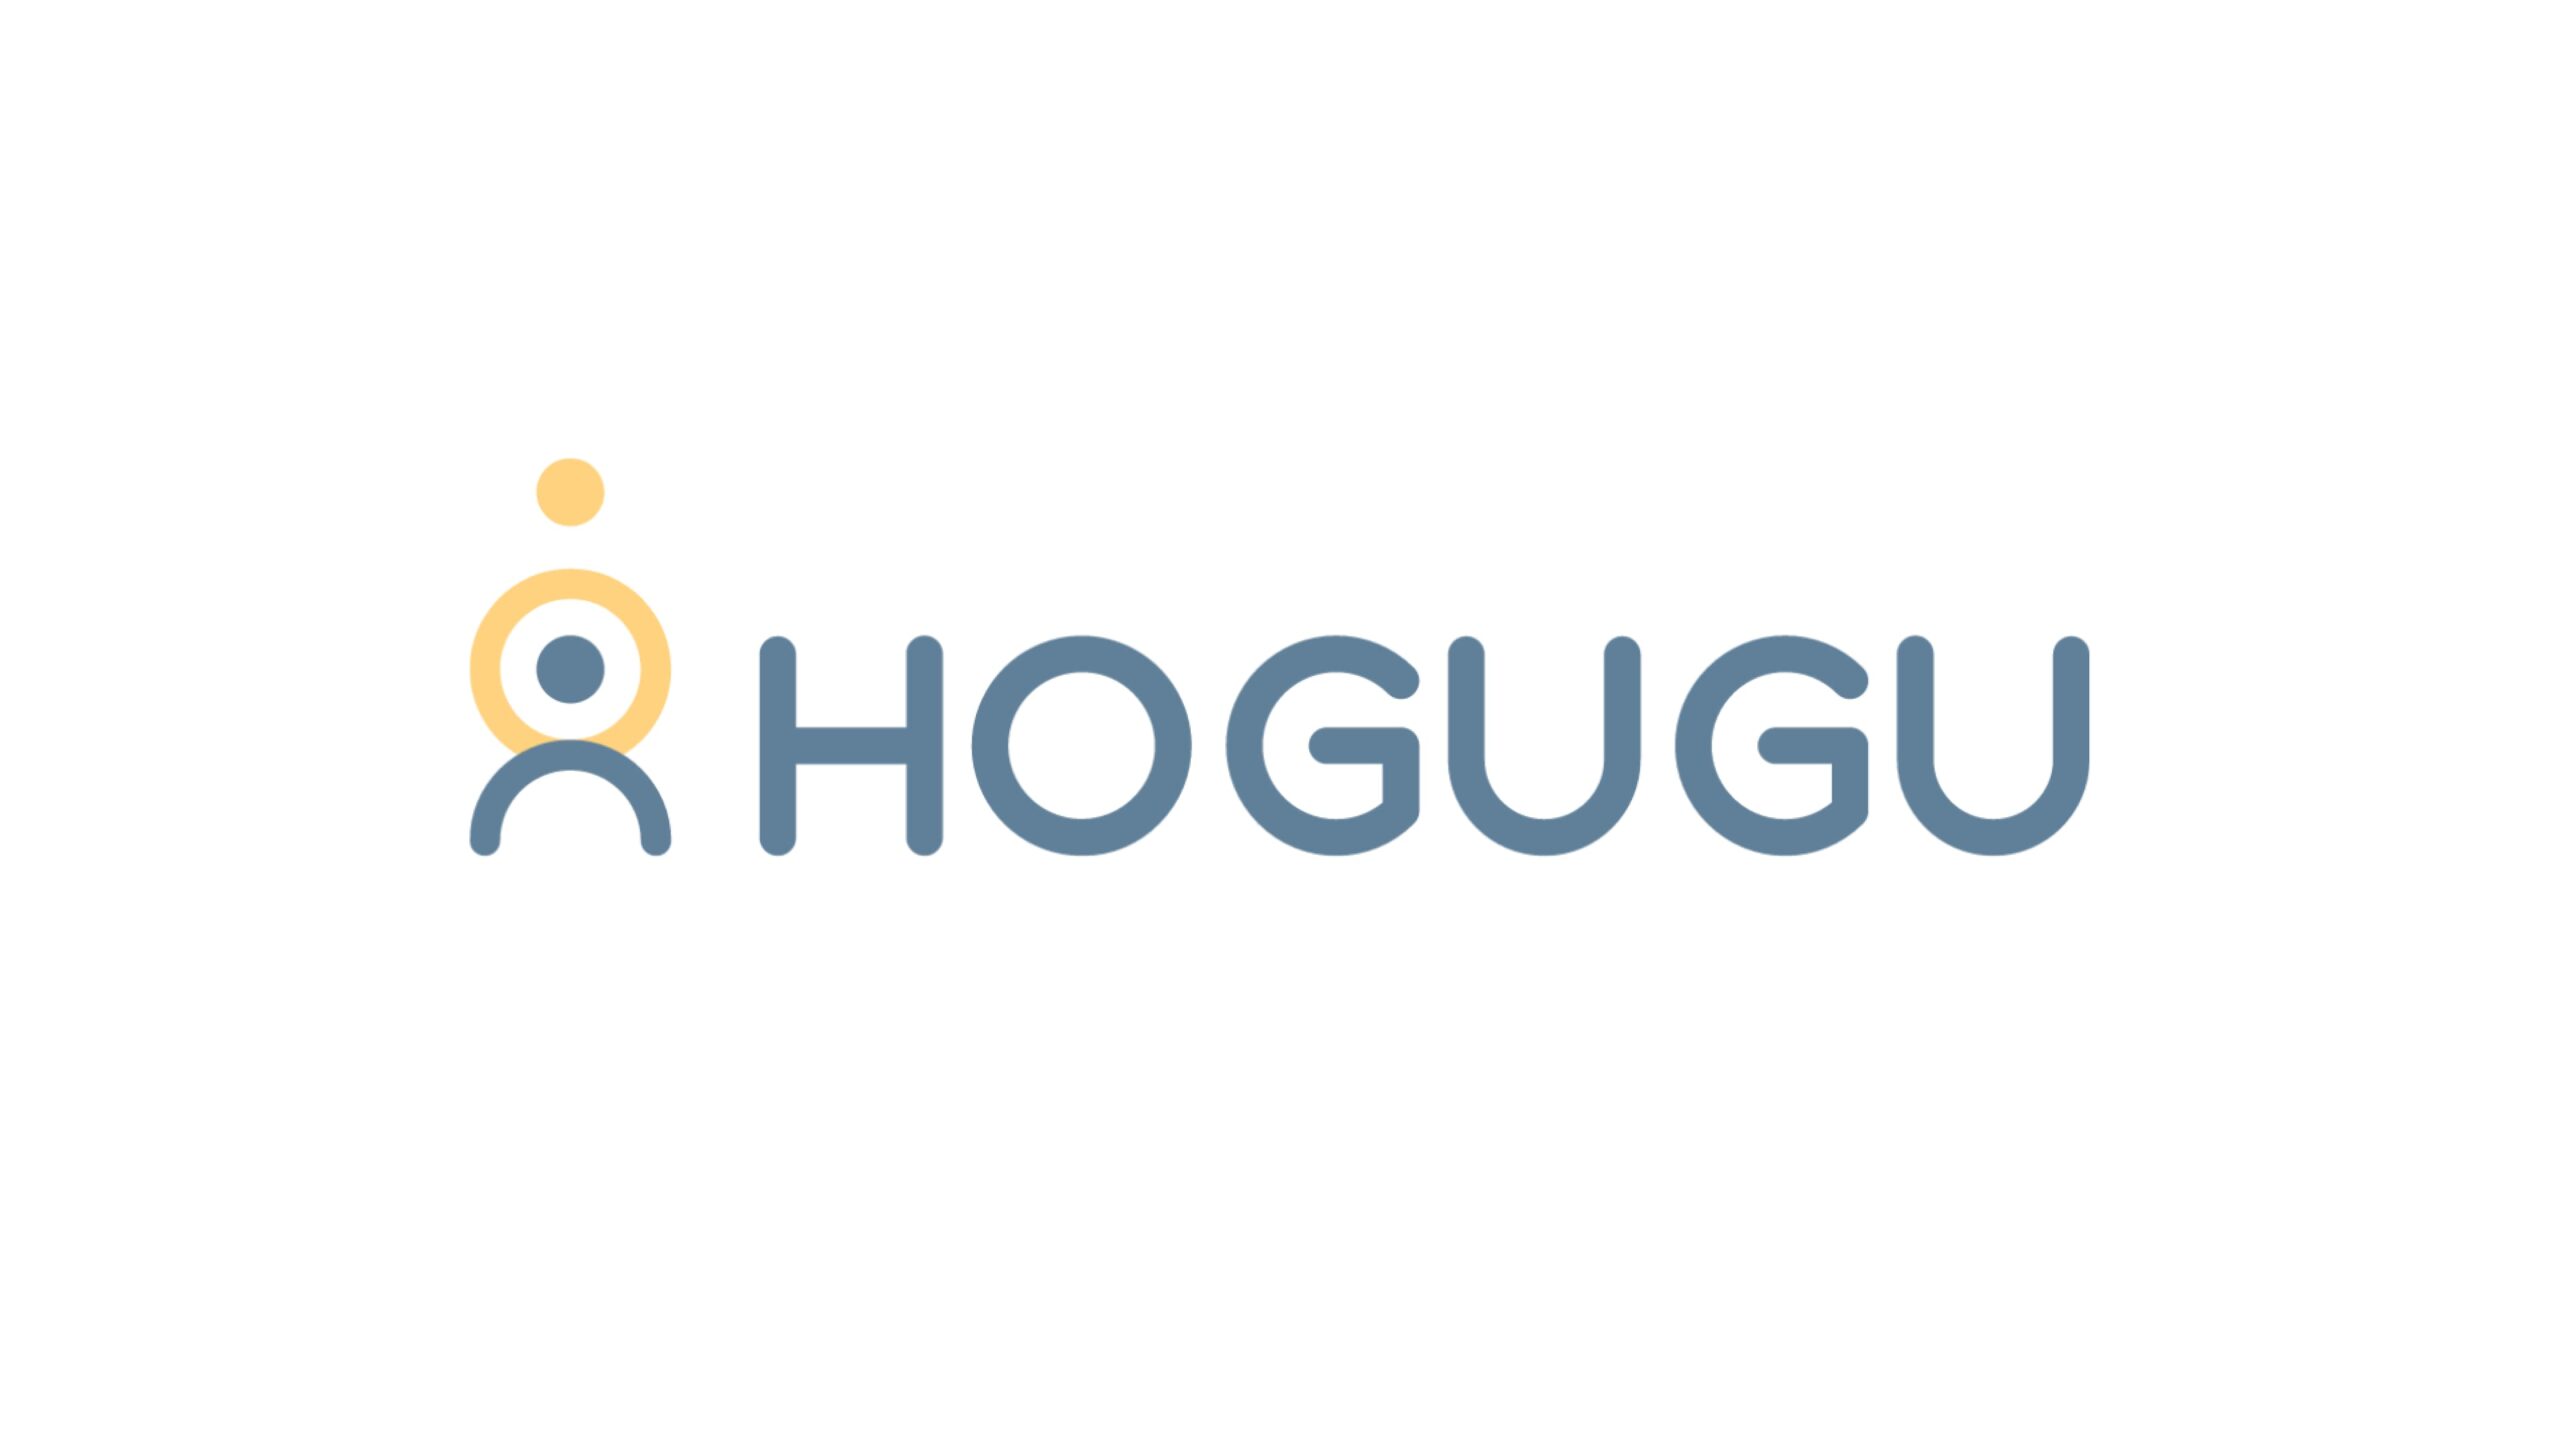 株式会社HOGUGUテクノロジーズがシリーズAにて1.2億円の資金調達ーシリーズA累計調達額は4.8億円に